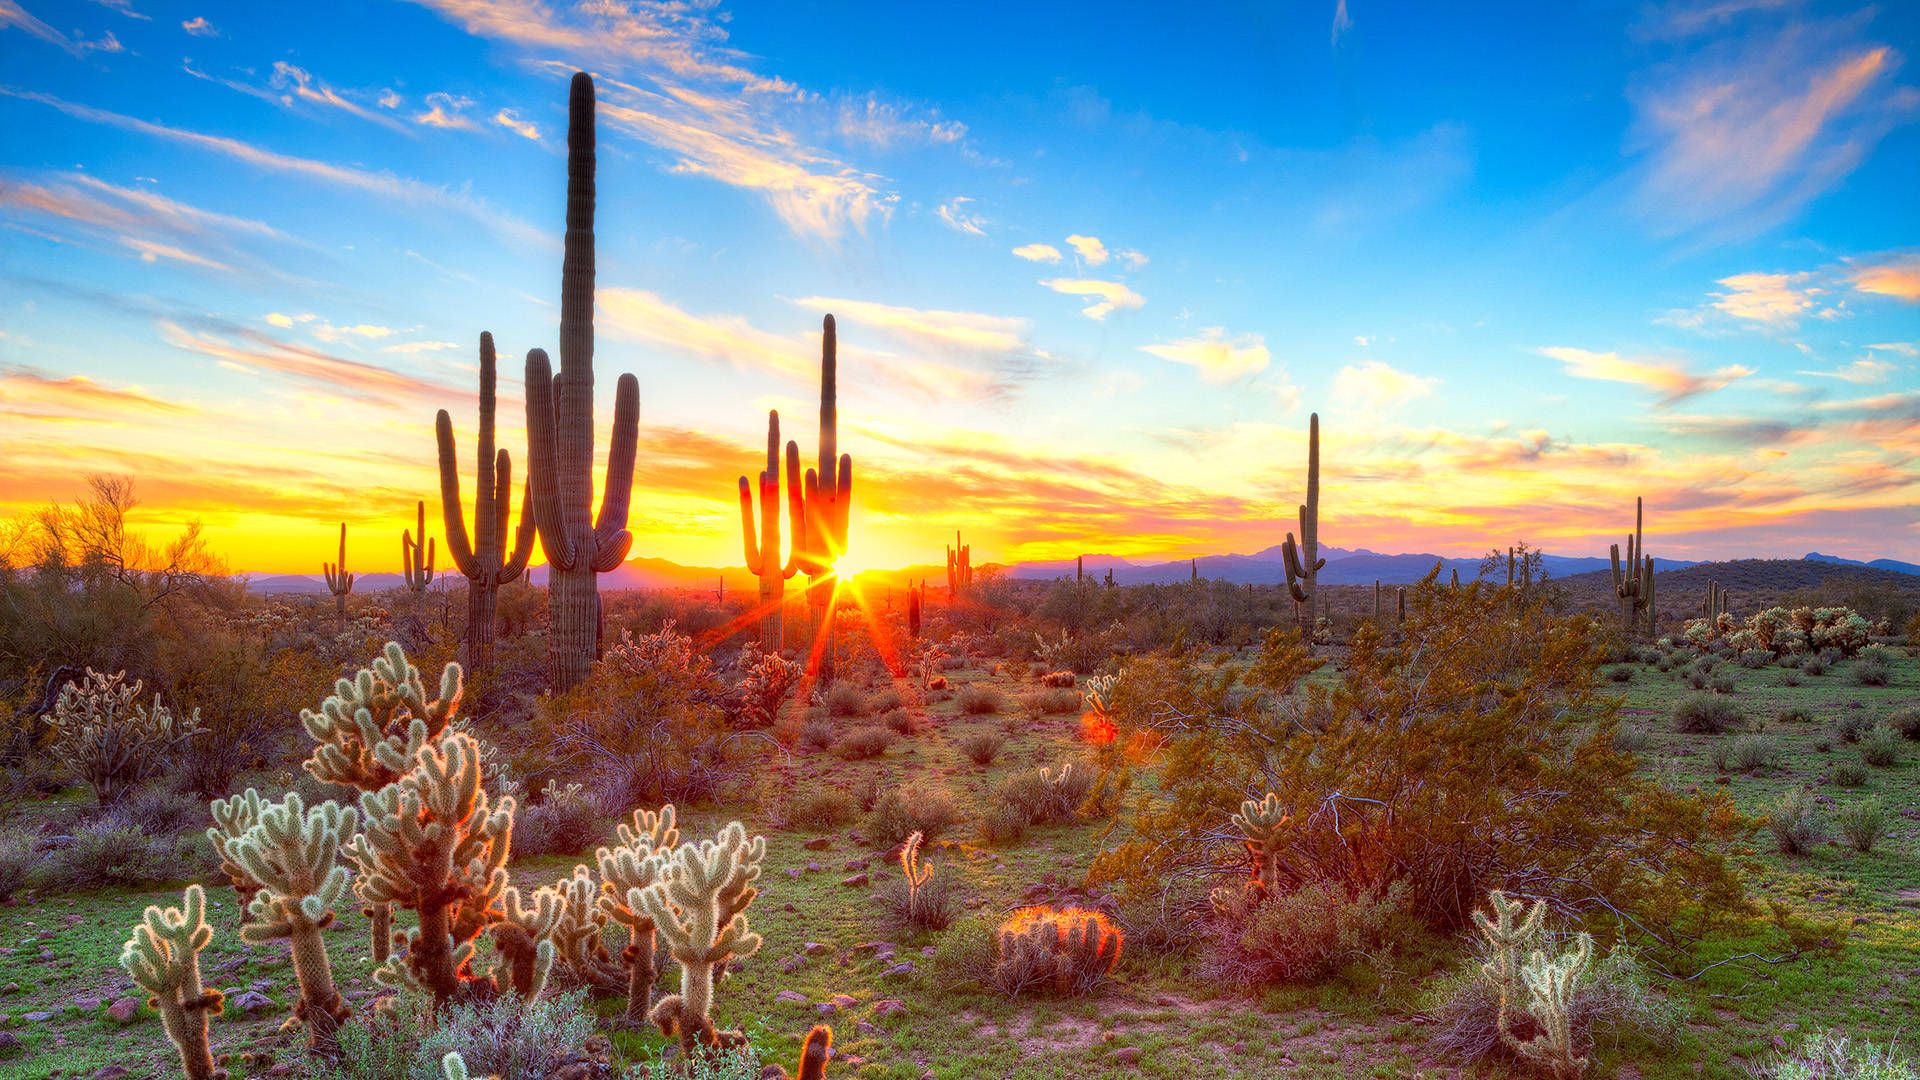 Lebendigerkaktusgarten In Der Wüste Arizonas Wallpaper